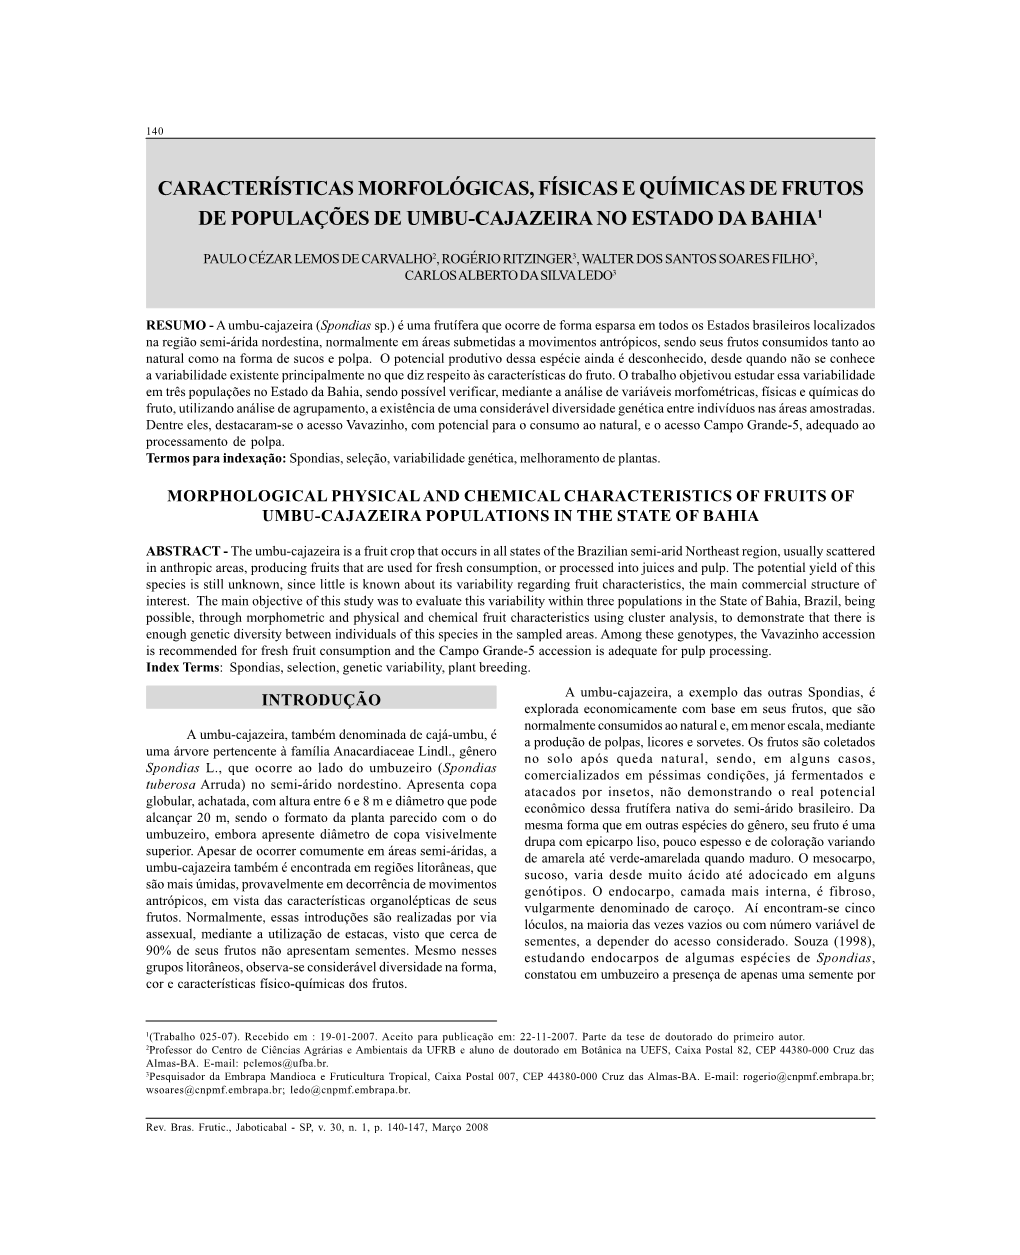 Características Morfológicas, Físicas E Químicas De Frutos De Populações De Umbu-Cajazeira No Estado Da Bahia1